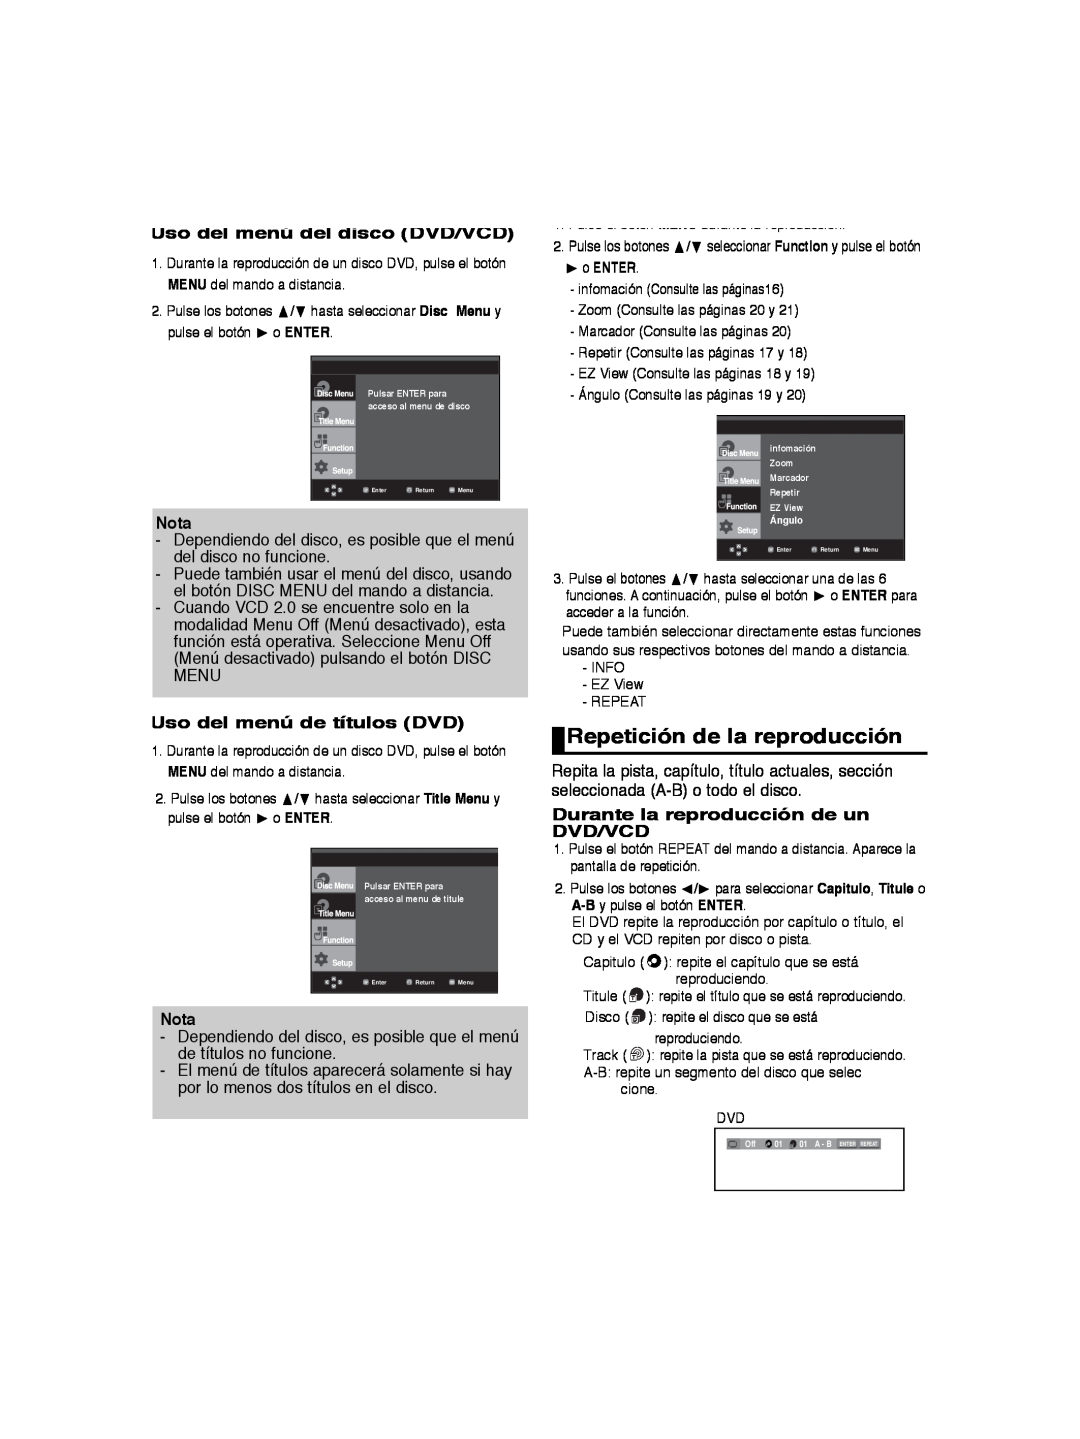 Samsung DVD-P260K/AFR Repetición de la reproducción, Uso del menú del disco DVD/VCD, Uso del menú de títulos DVD, Nota 